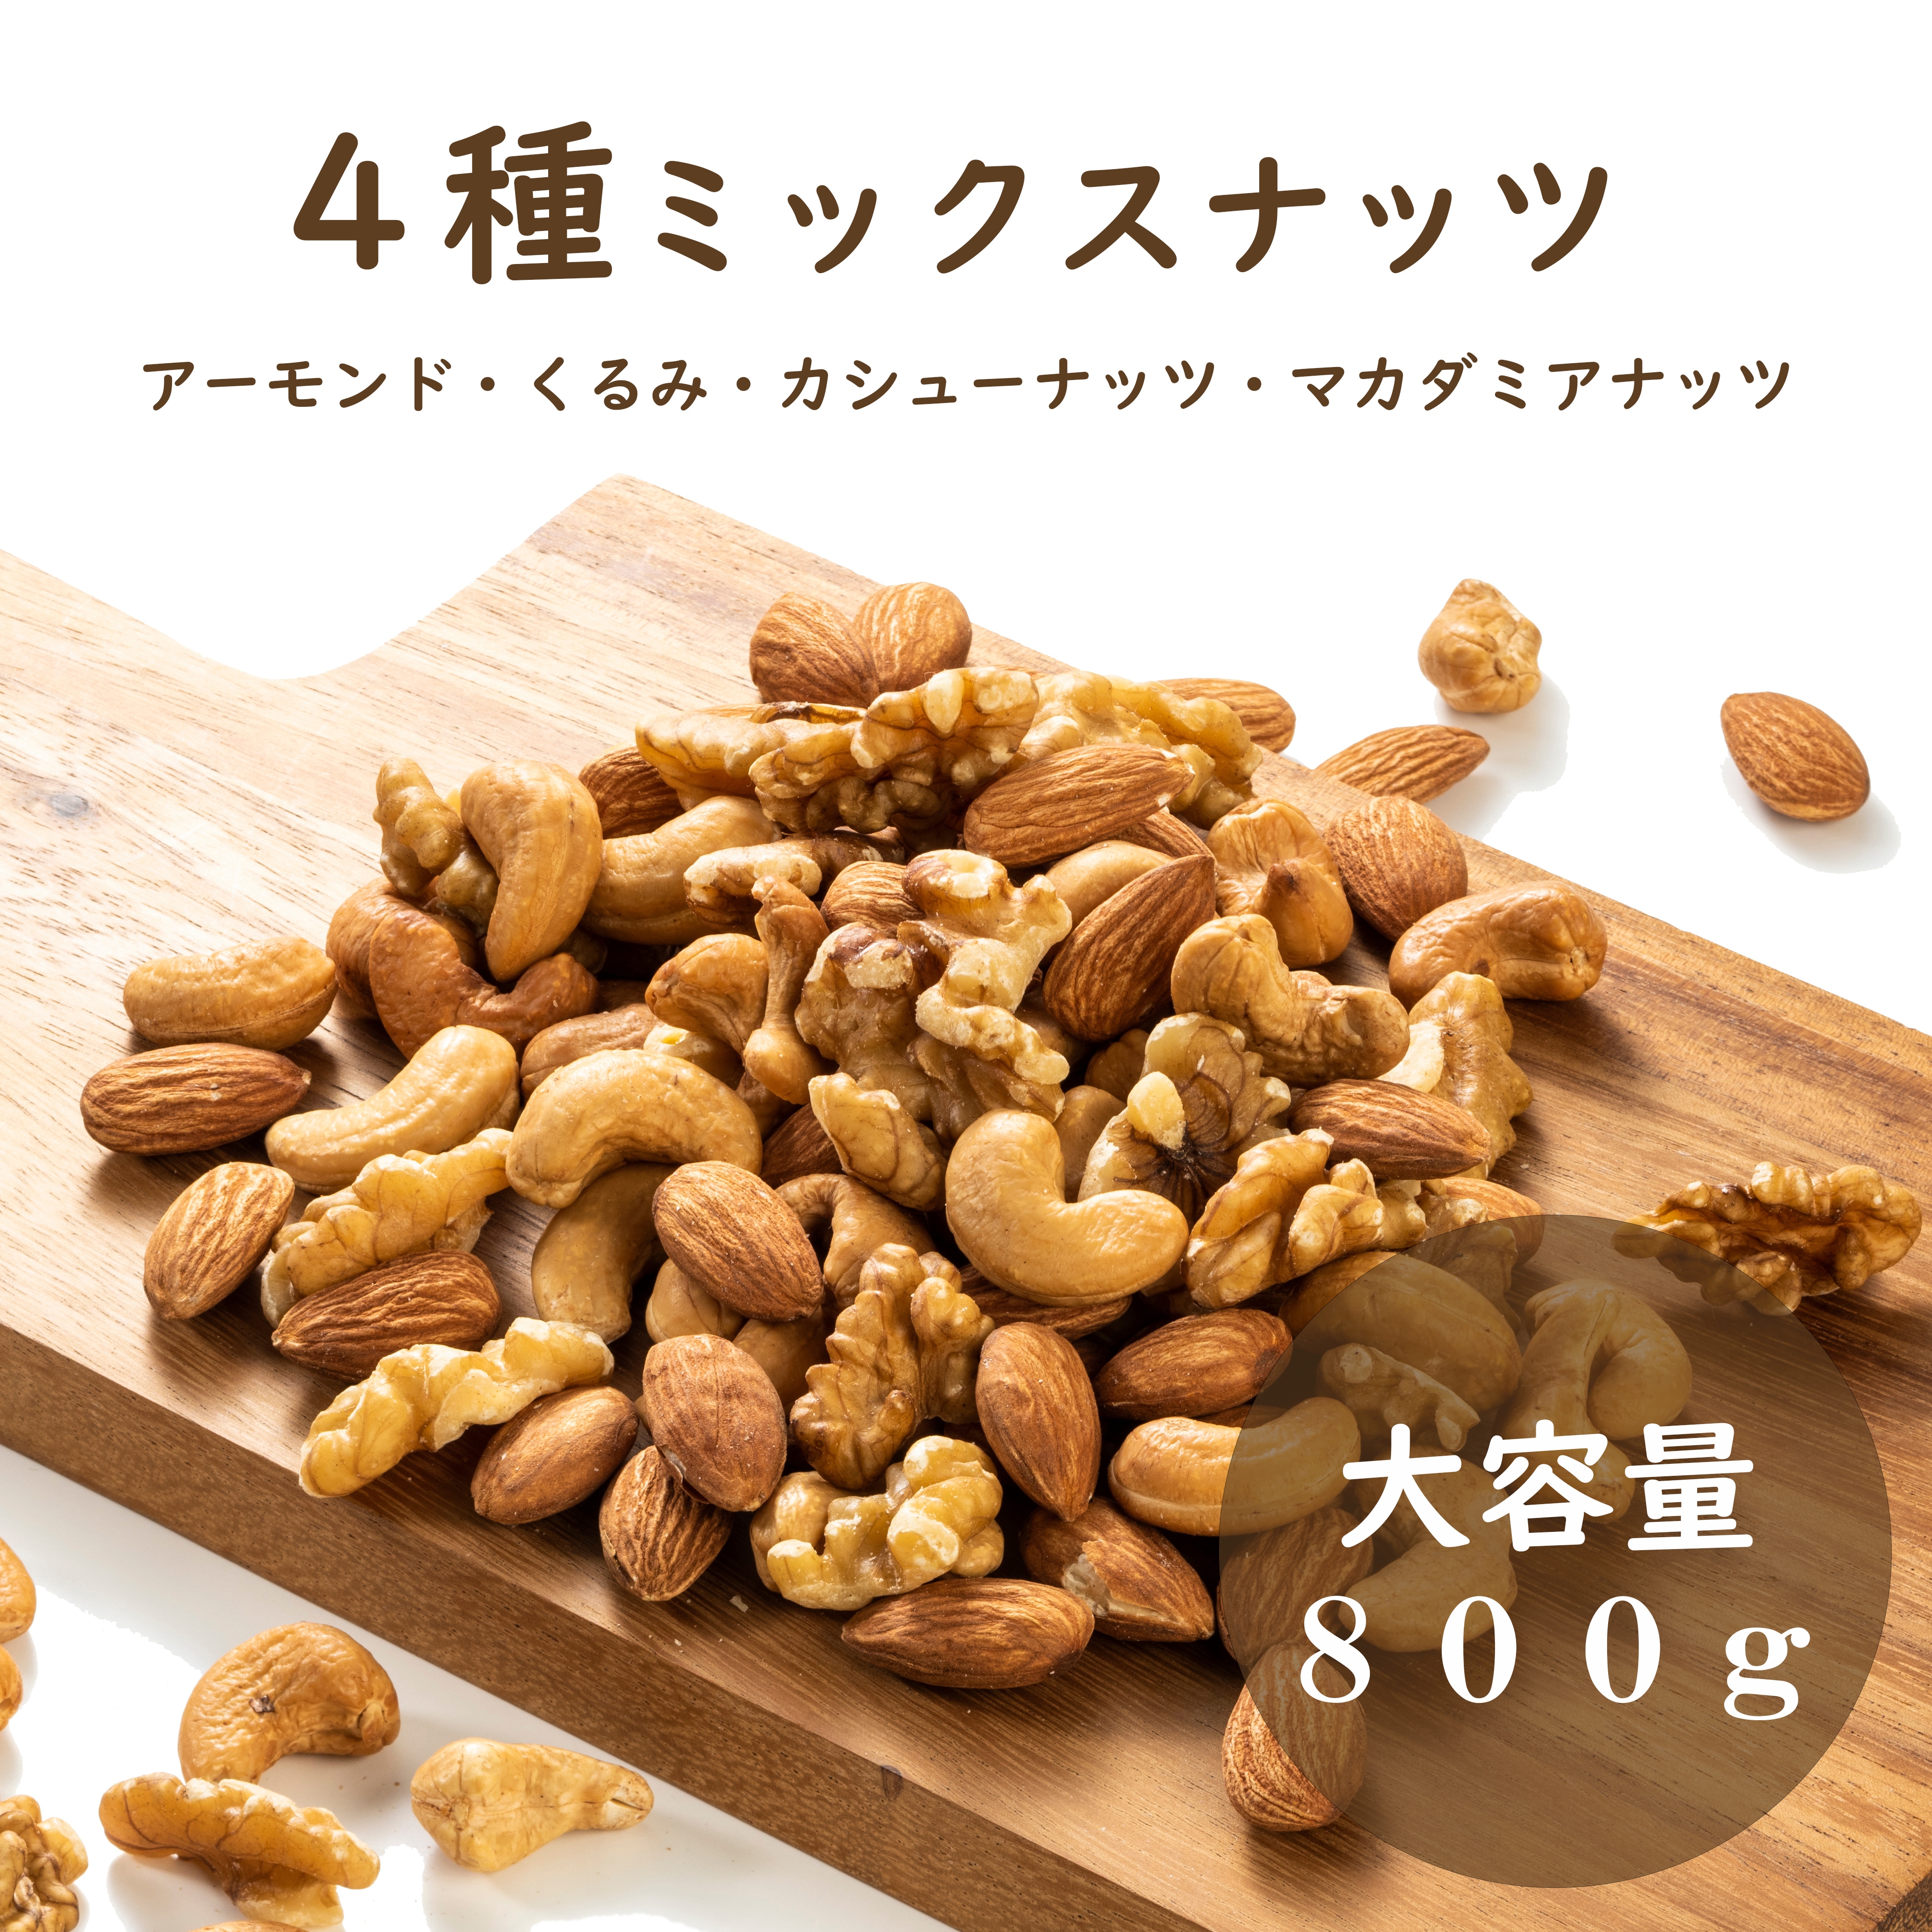 ❤️NEW 3種ミックスナッツ 800g❤️生クルミ 素焼きアーモンドb - 菓子